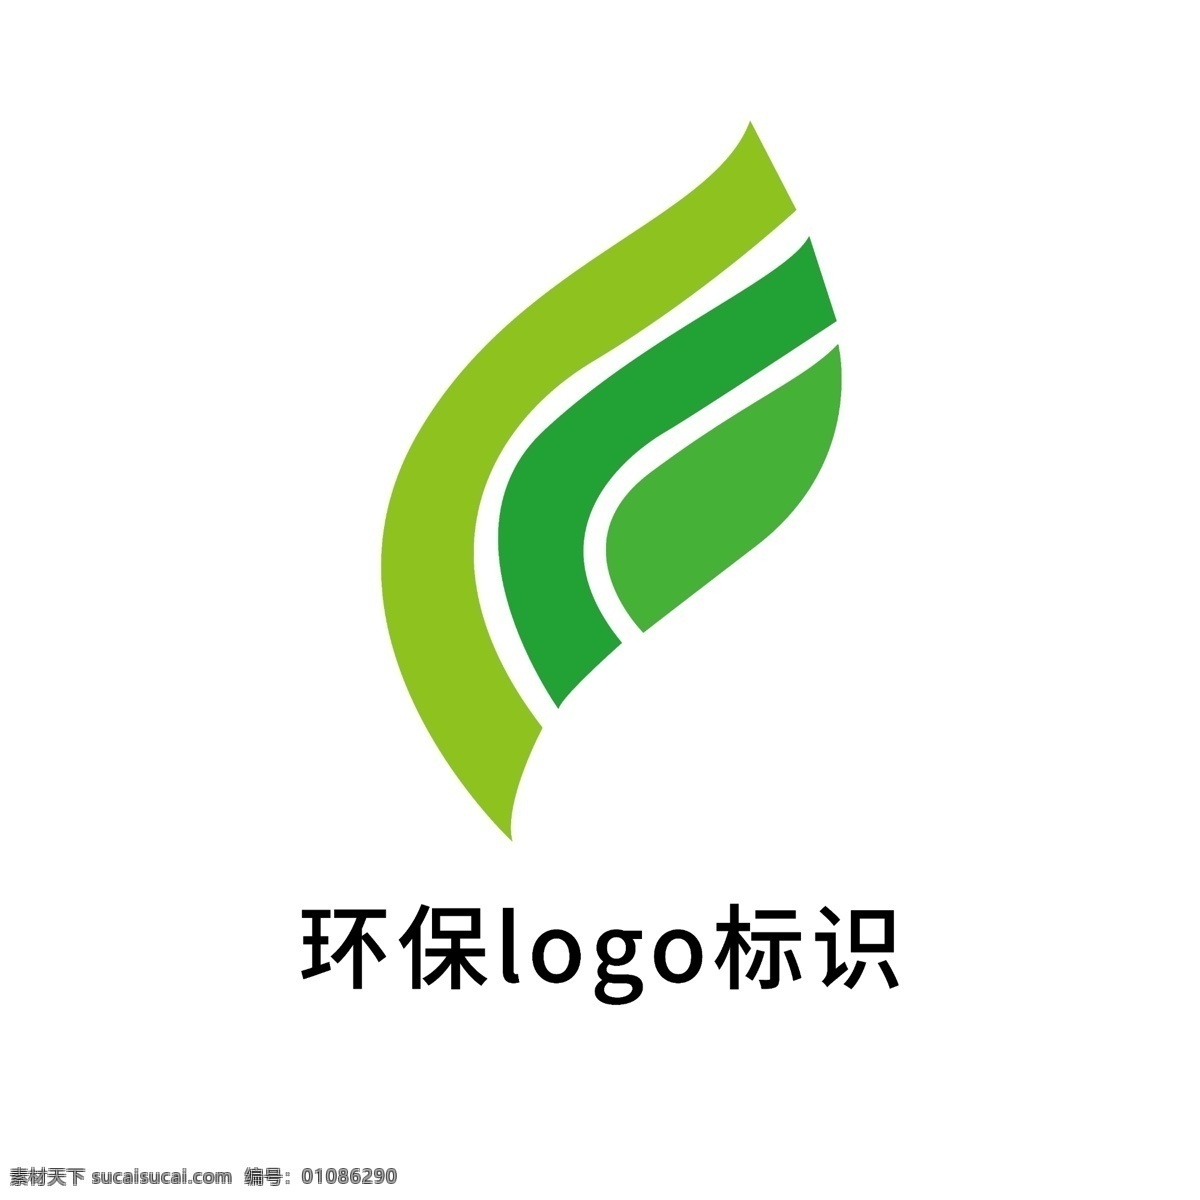 环保 logo 标识 模板 绿色